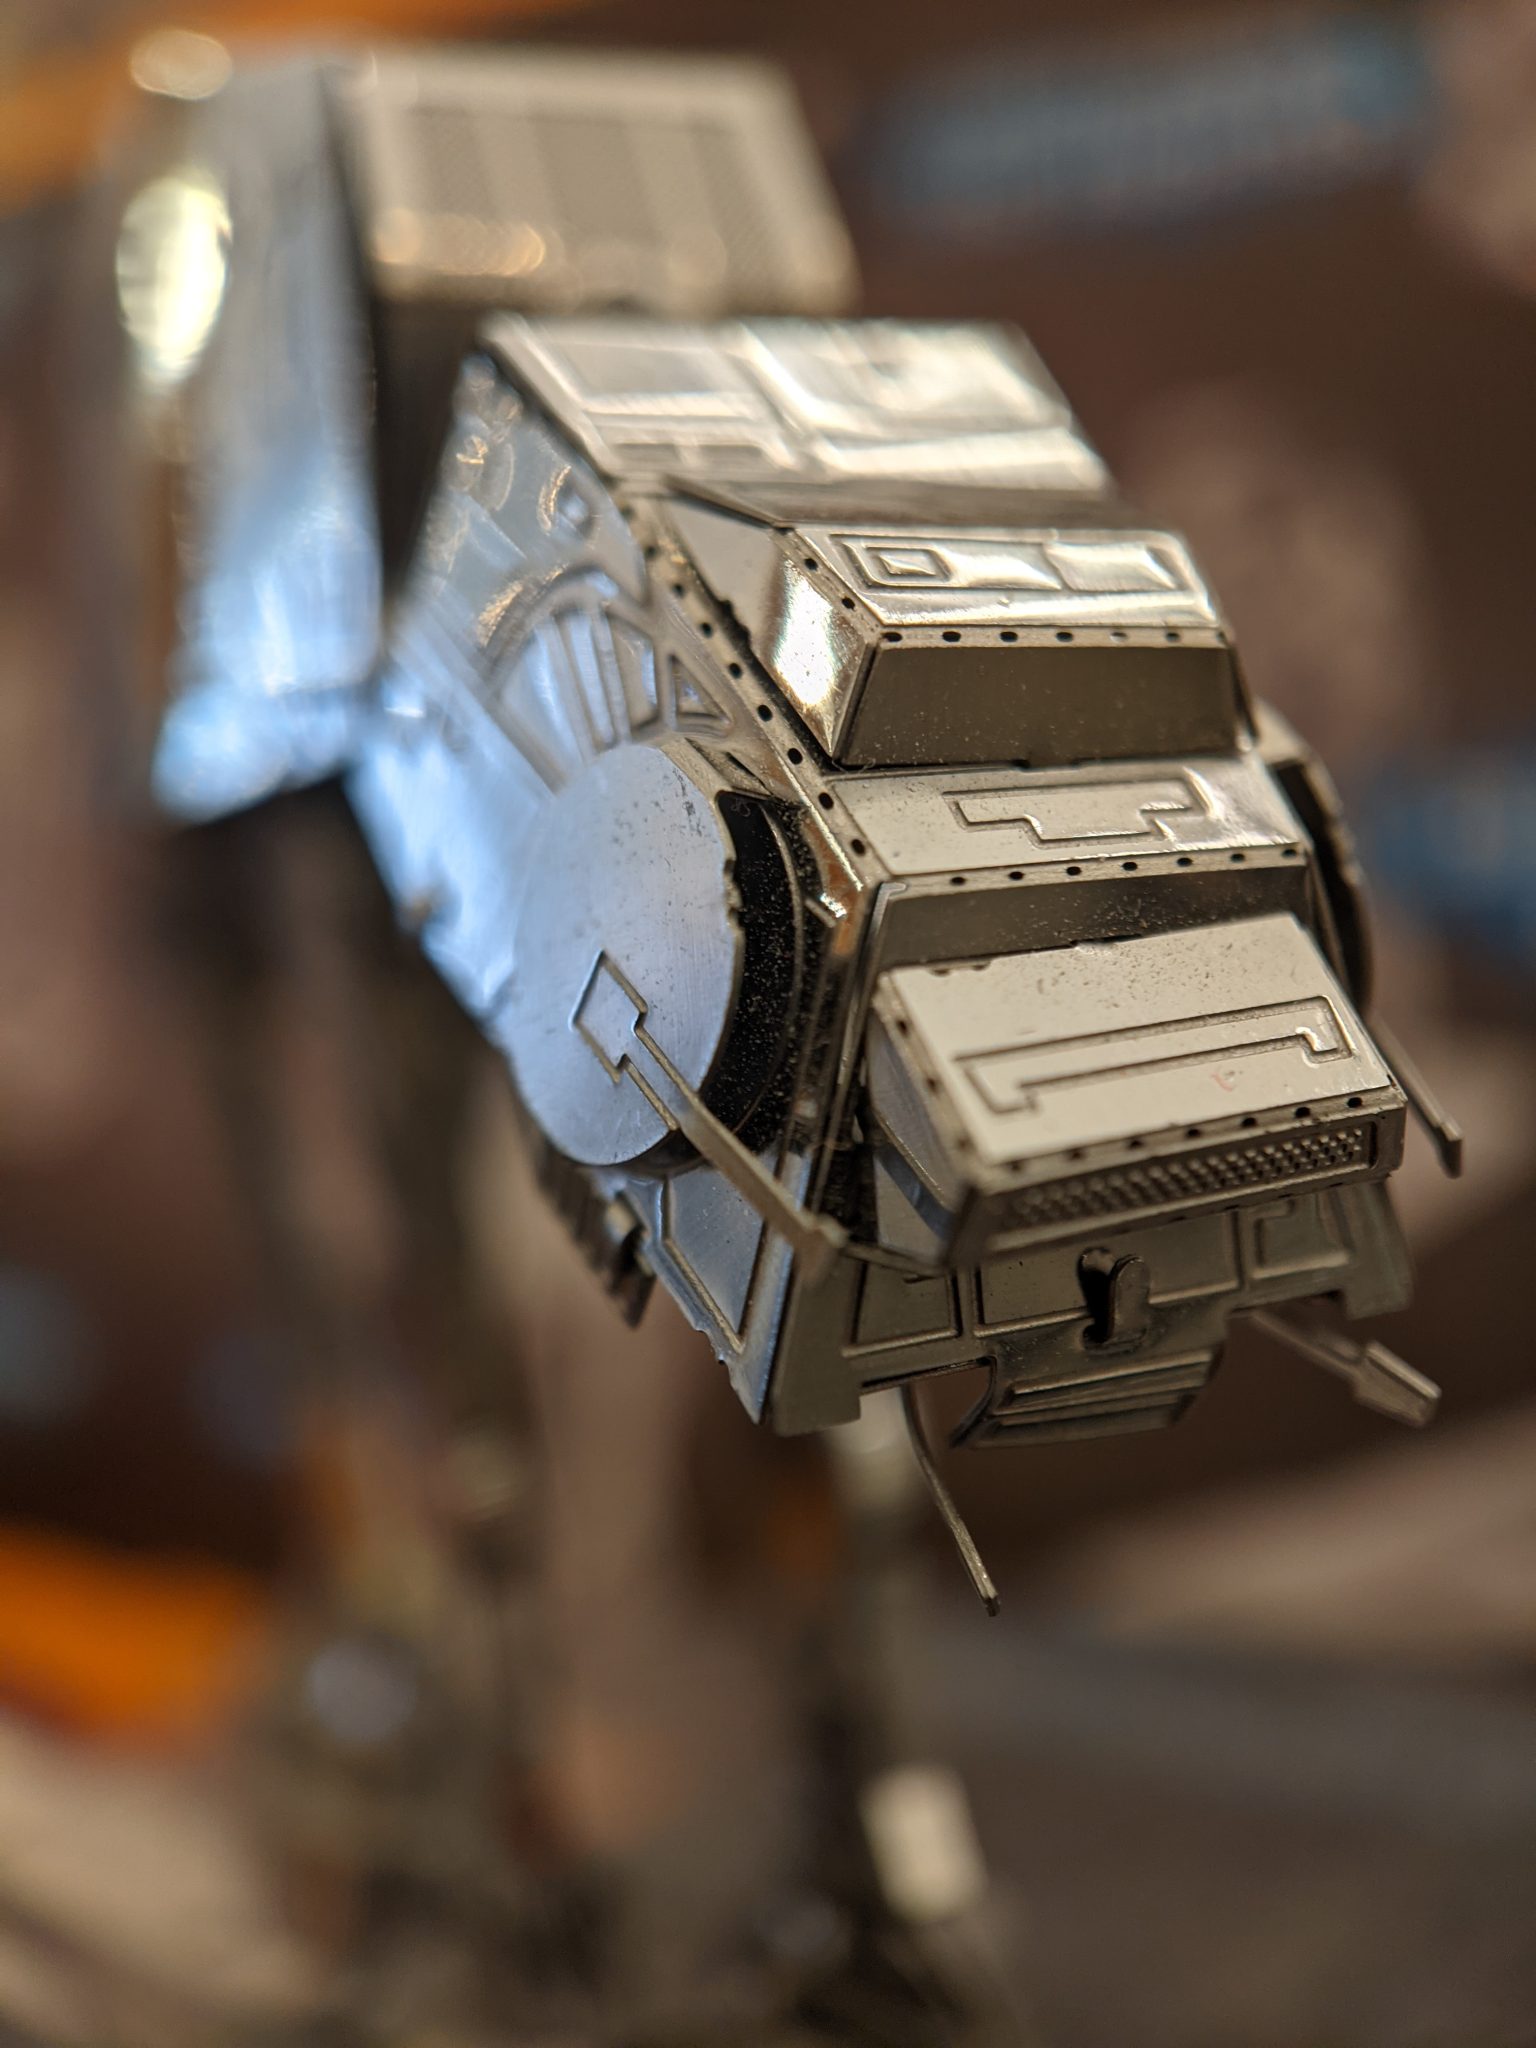 Closeup of a model of an AT-AT walker